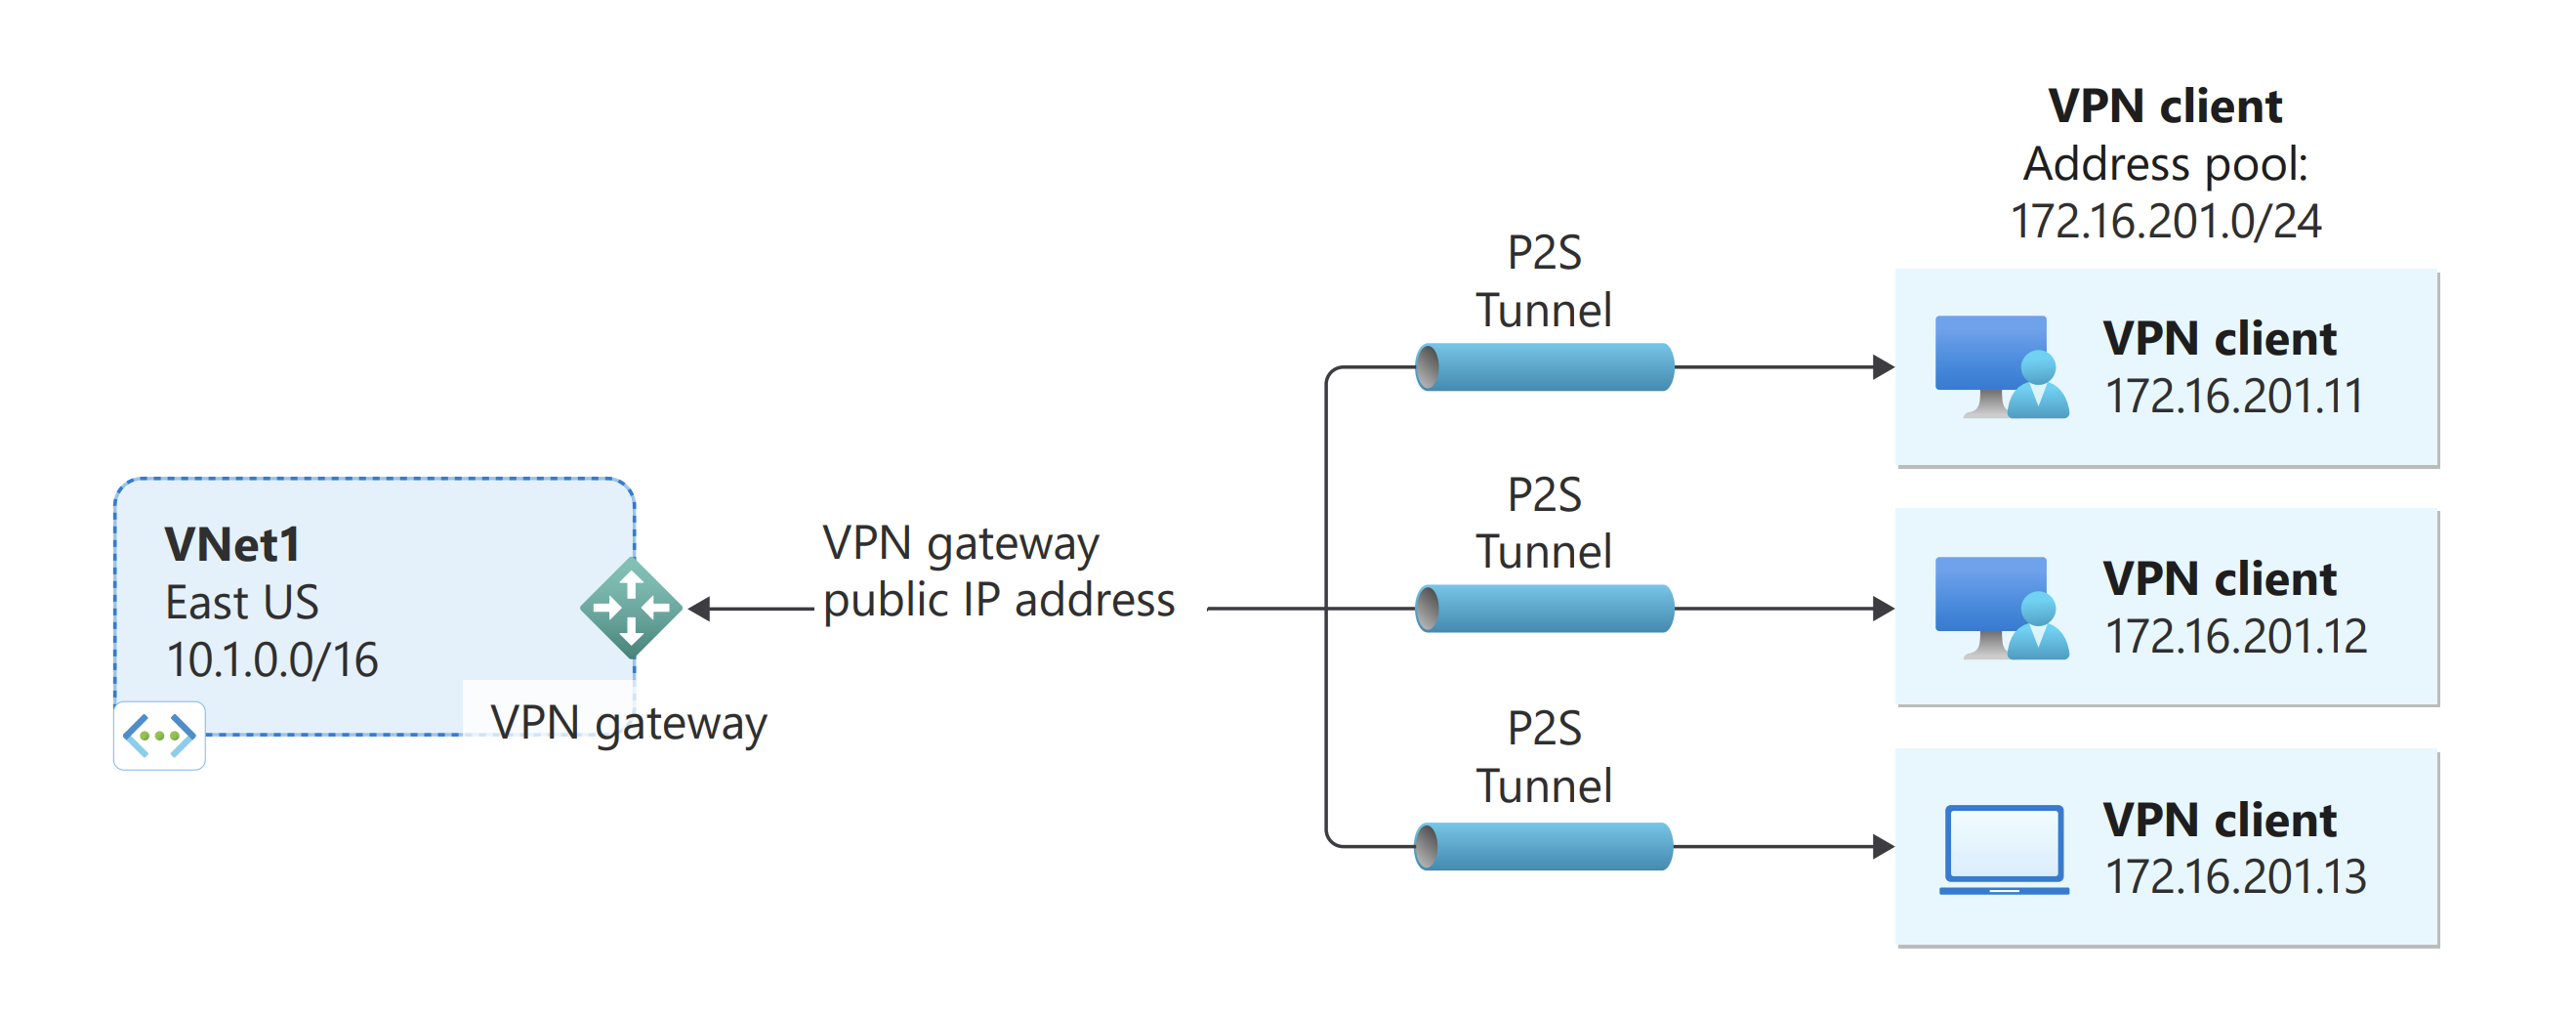 コンピューターから Azure VNet へ接続する方法を示すポイント対サイト接続の図